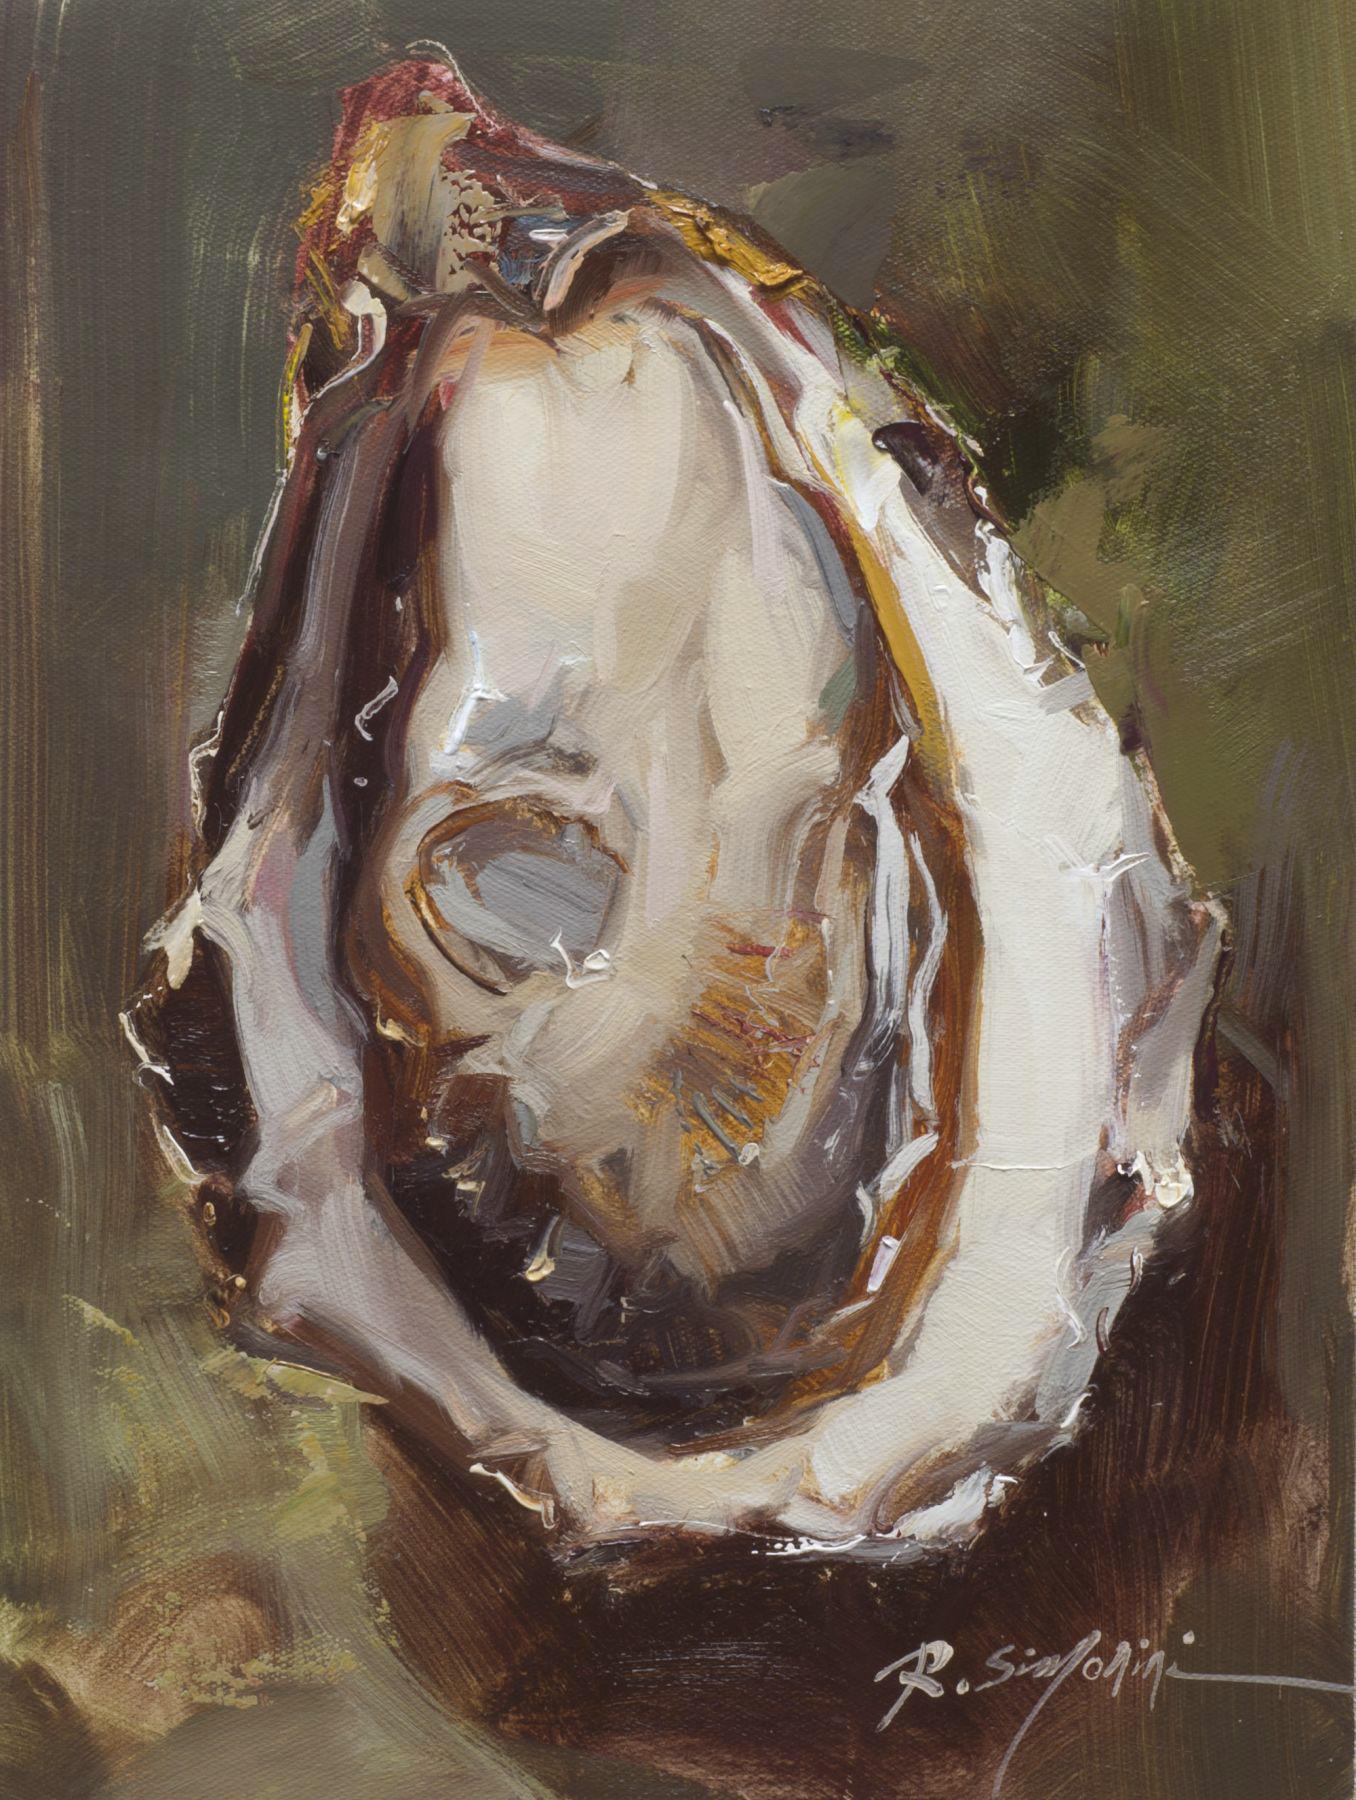 Dieses Gemälde des Künstlers Ray Simonini mit dem Titel "Perfect Oyster" ist ein 16x12 nautisches Ölgemälde auf Leinwand, das eine Nahaufnahme einer Austernschale vor einem tiefgrünen und braunen Hintergrund zeigt.

Über den Künstler:
SIMONINI wurde